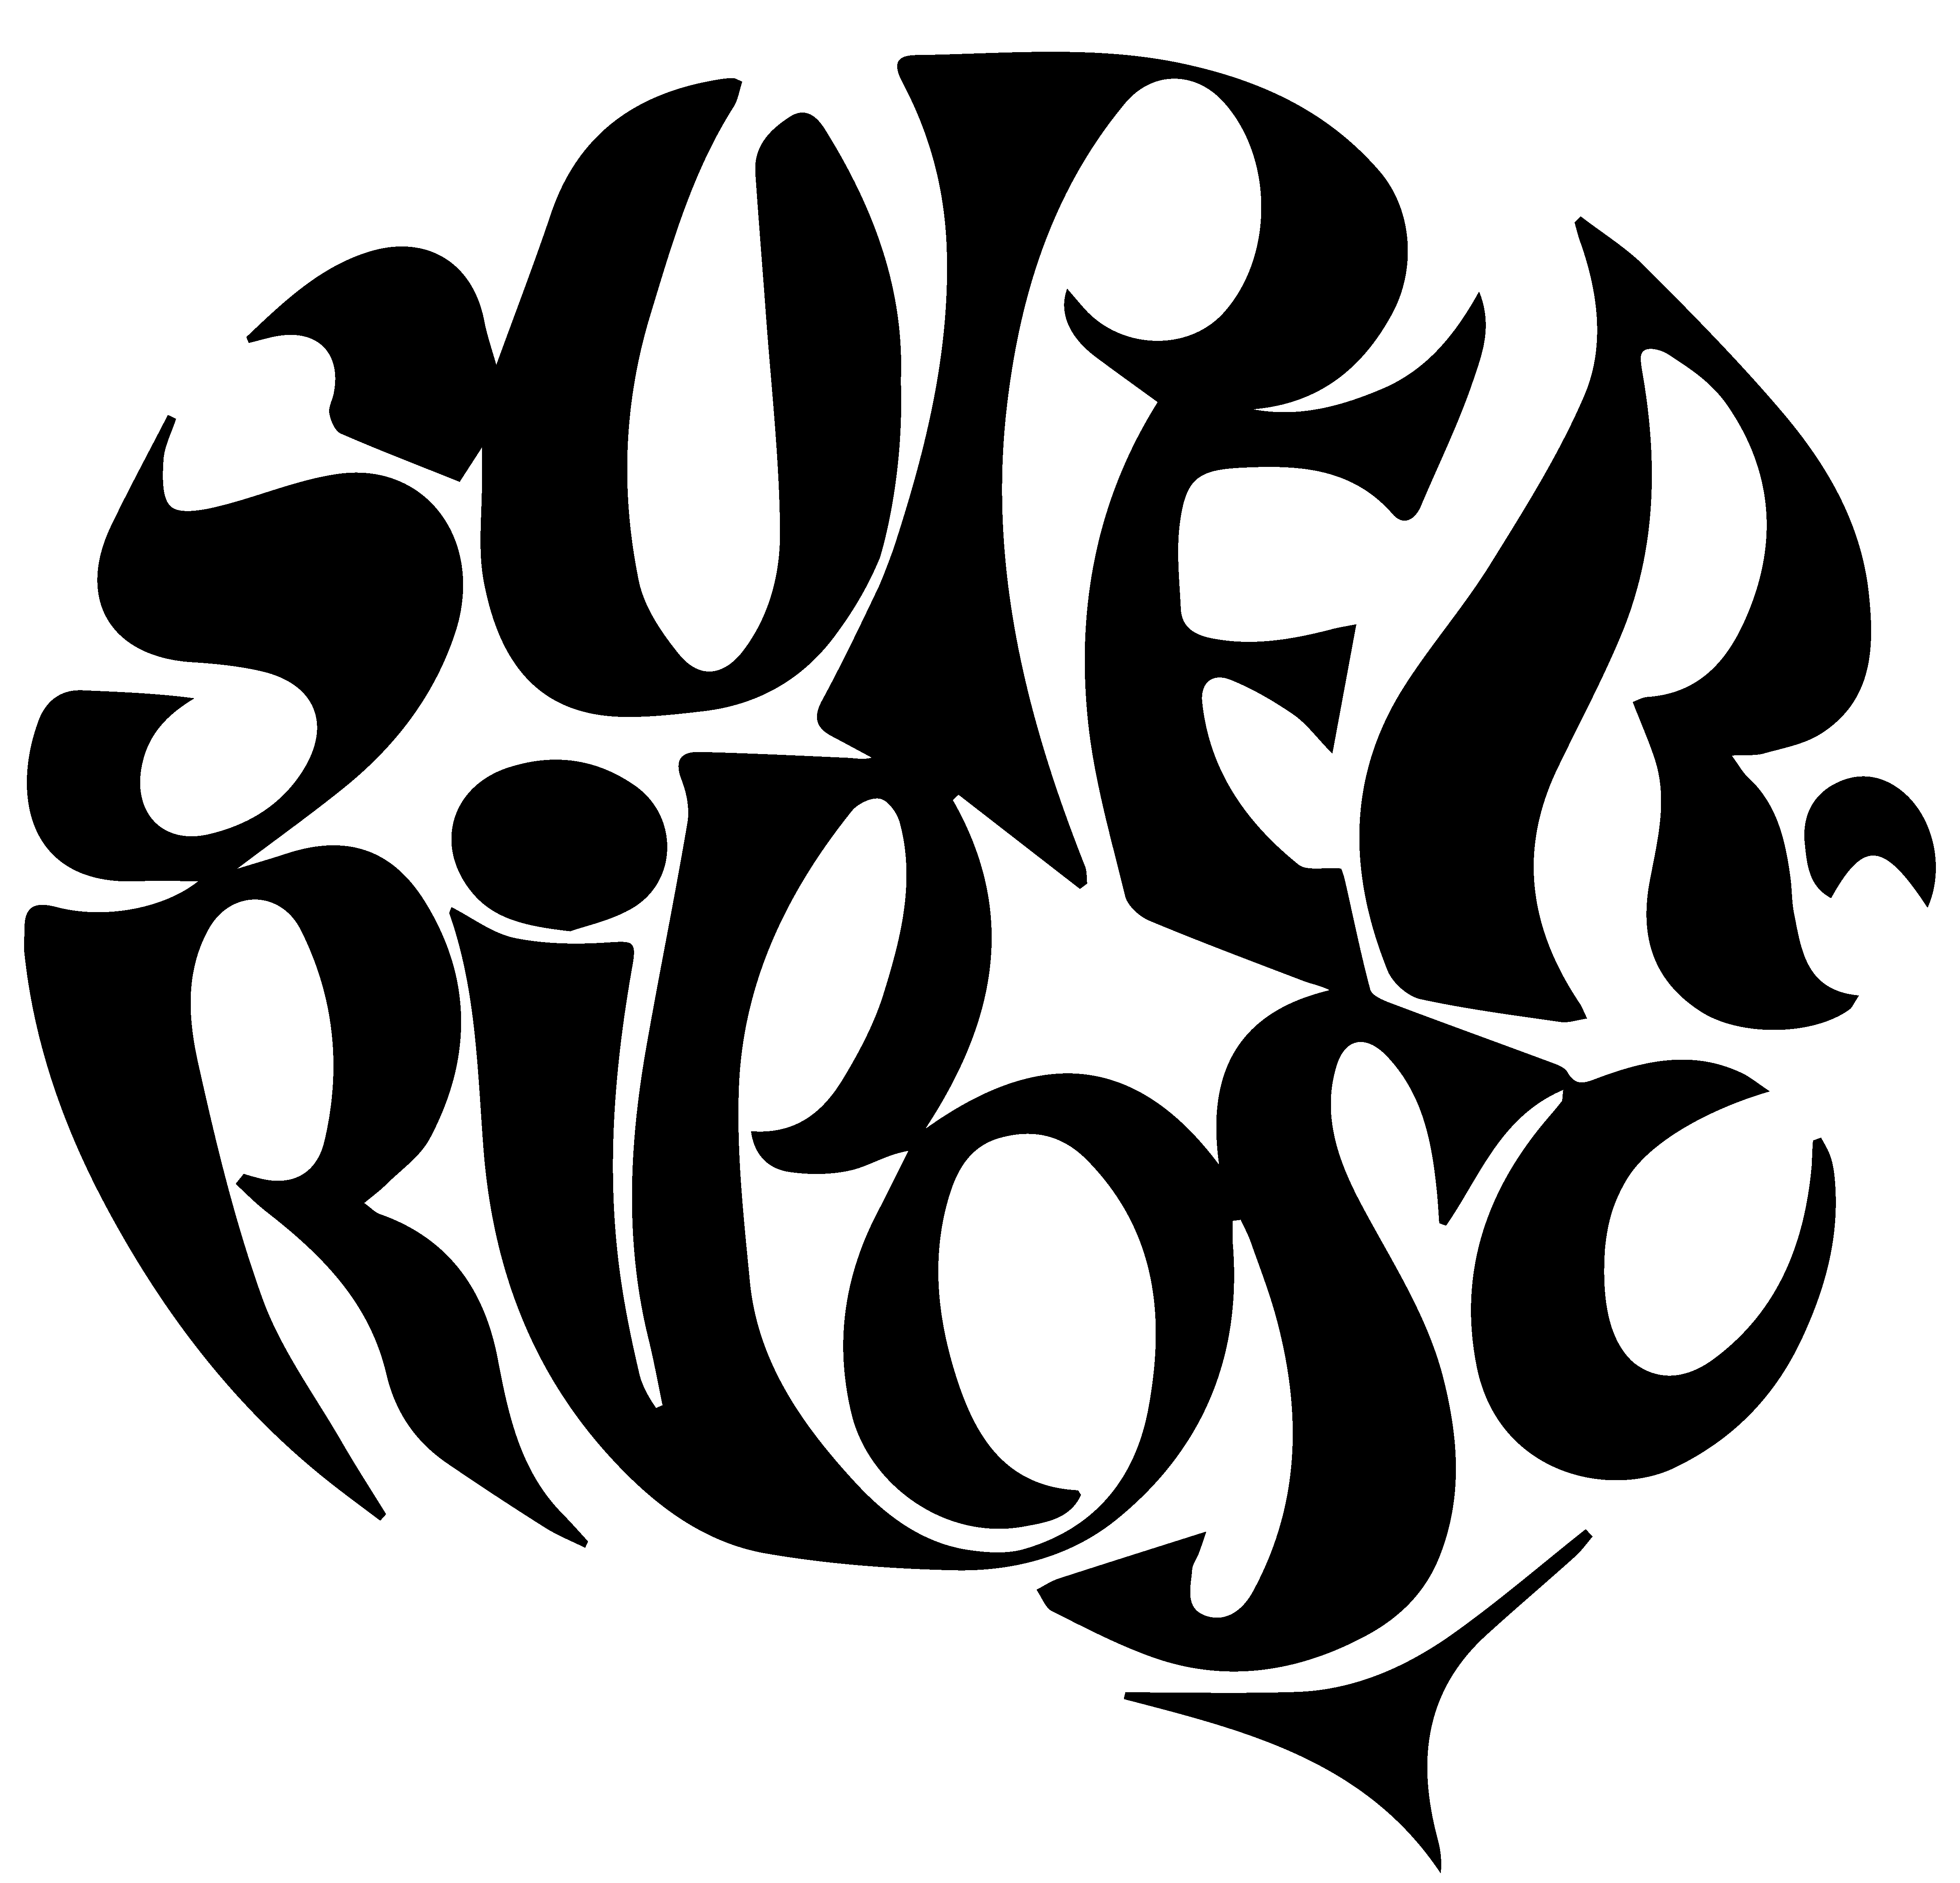 Super Riposo,                   logo ideato dal grafico Alessandro Conti per il lancio del divano Onda